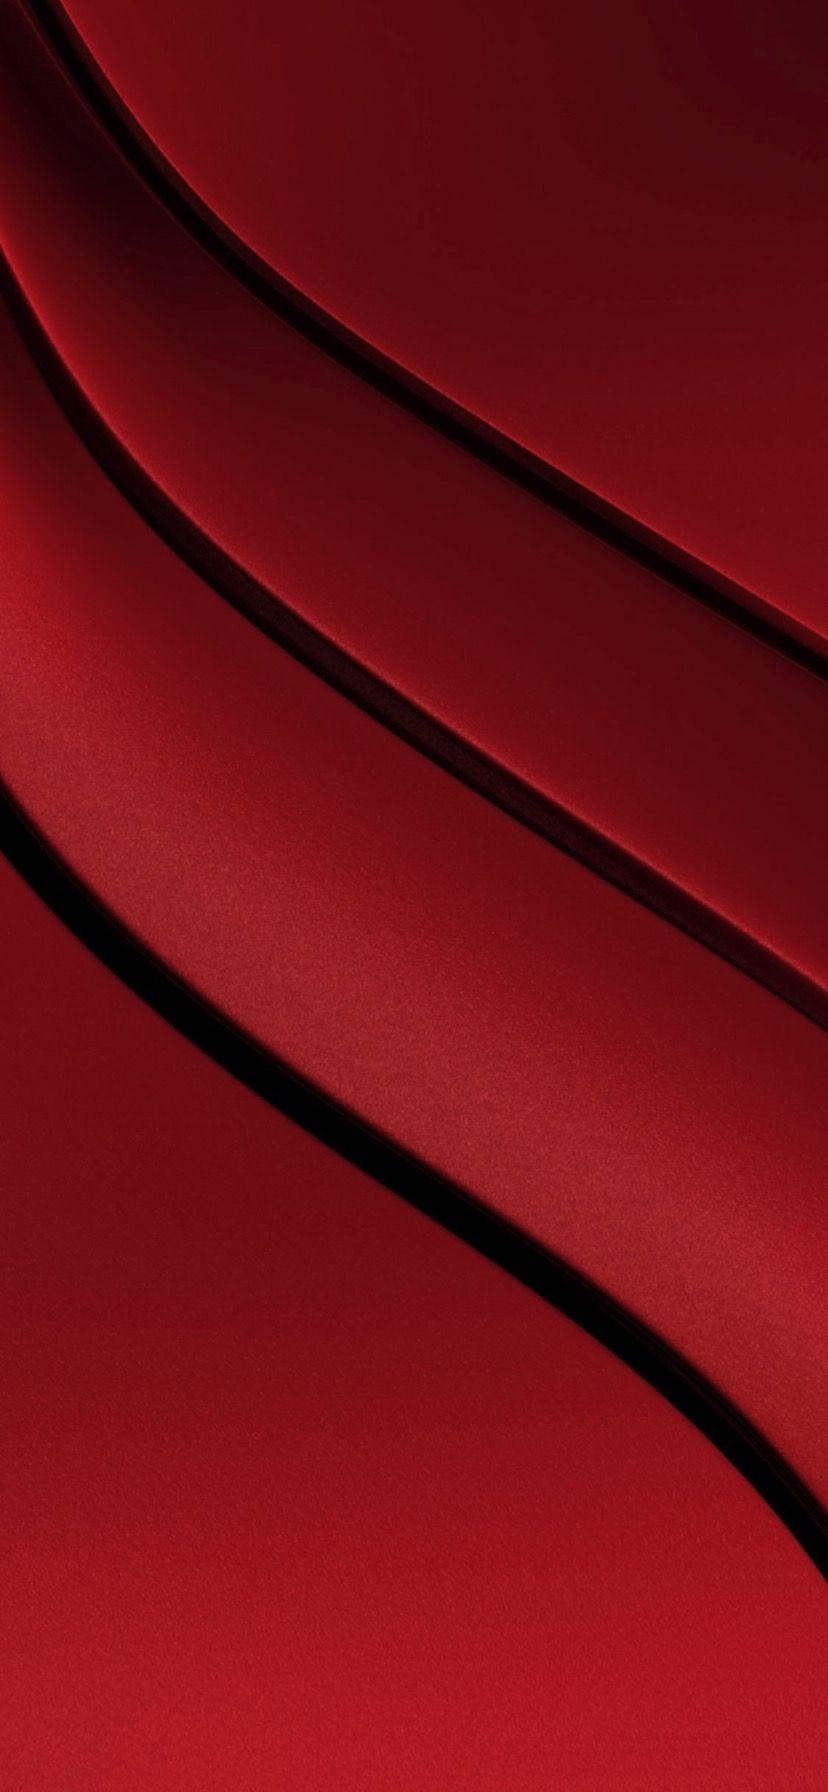 Đỏ là màu sắc của sự may mắn, niềm vui và sự kiêu hãnh. Hình nền iPhone XR đỏ sẽ làm bạn choáng ngợp bởi sự độc đáo và nổi bật. Hãy xem ngay hình nền iPhone XR đỏ để trang trí cho chiếc iPhone của bạn trở nên thật đặc biệt.